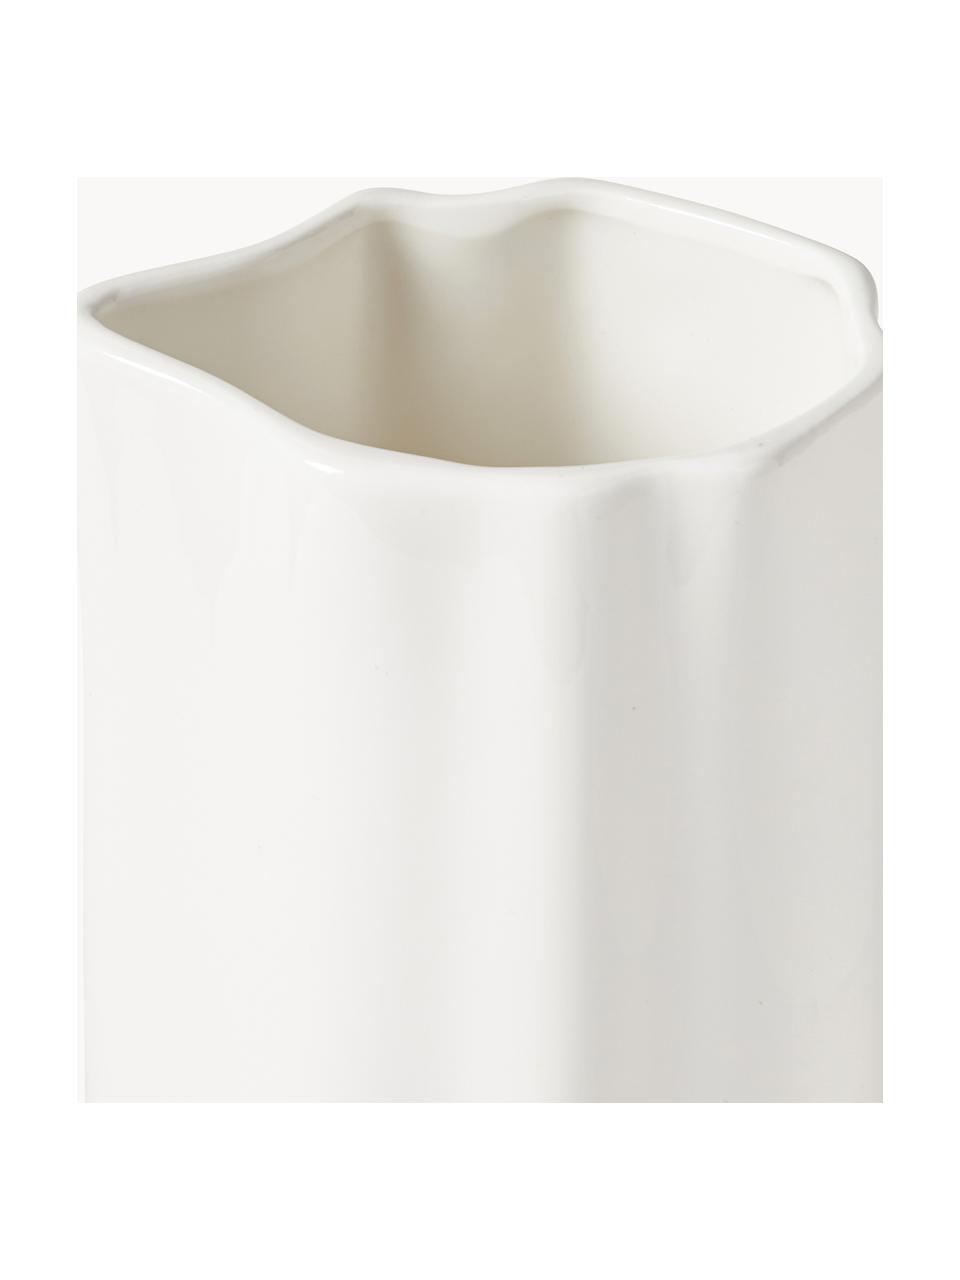 Jarra de porcelana ecológica Joana, 1,6 l, Porcelana, Blanco, 1,6 L